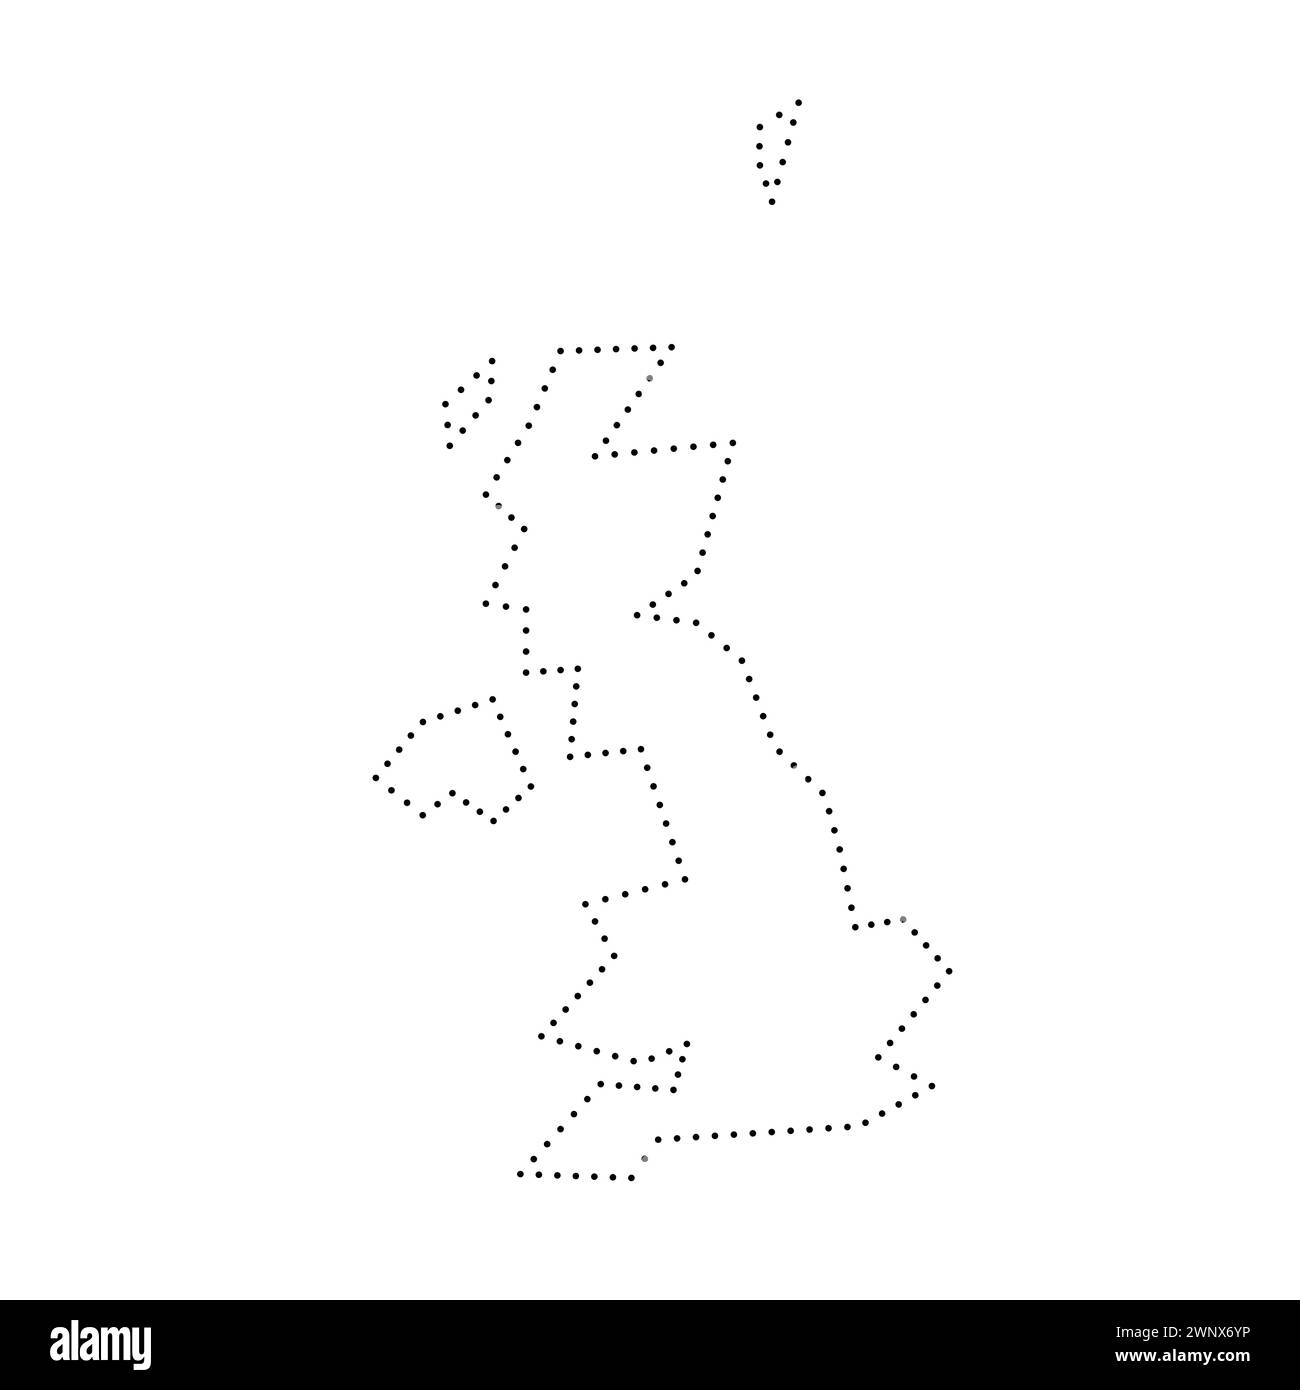 Vereinfachte Landkarte des Vereinigten Königreichs Großbritannien und Nordirland. Schwarz gepunktete Kontur. Einfaches Vektorsymbol. Stock Vektor